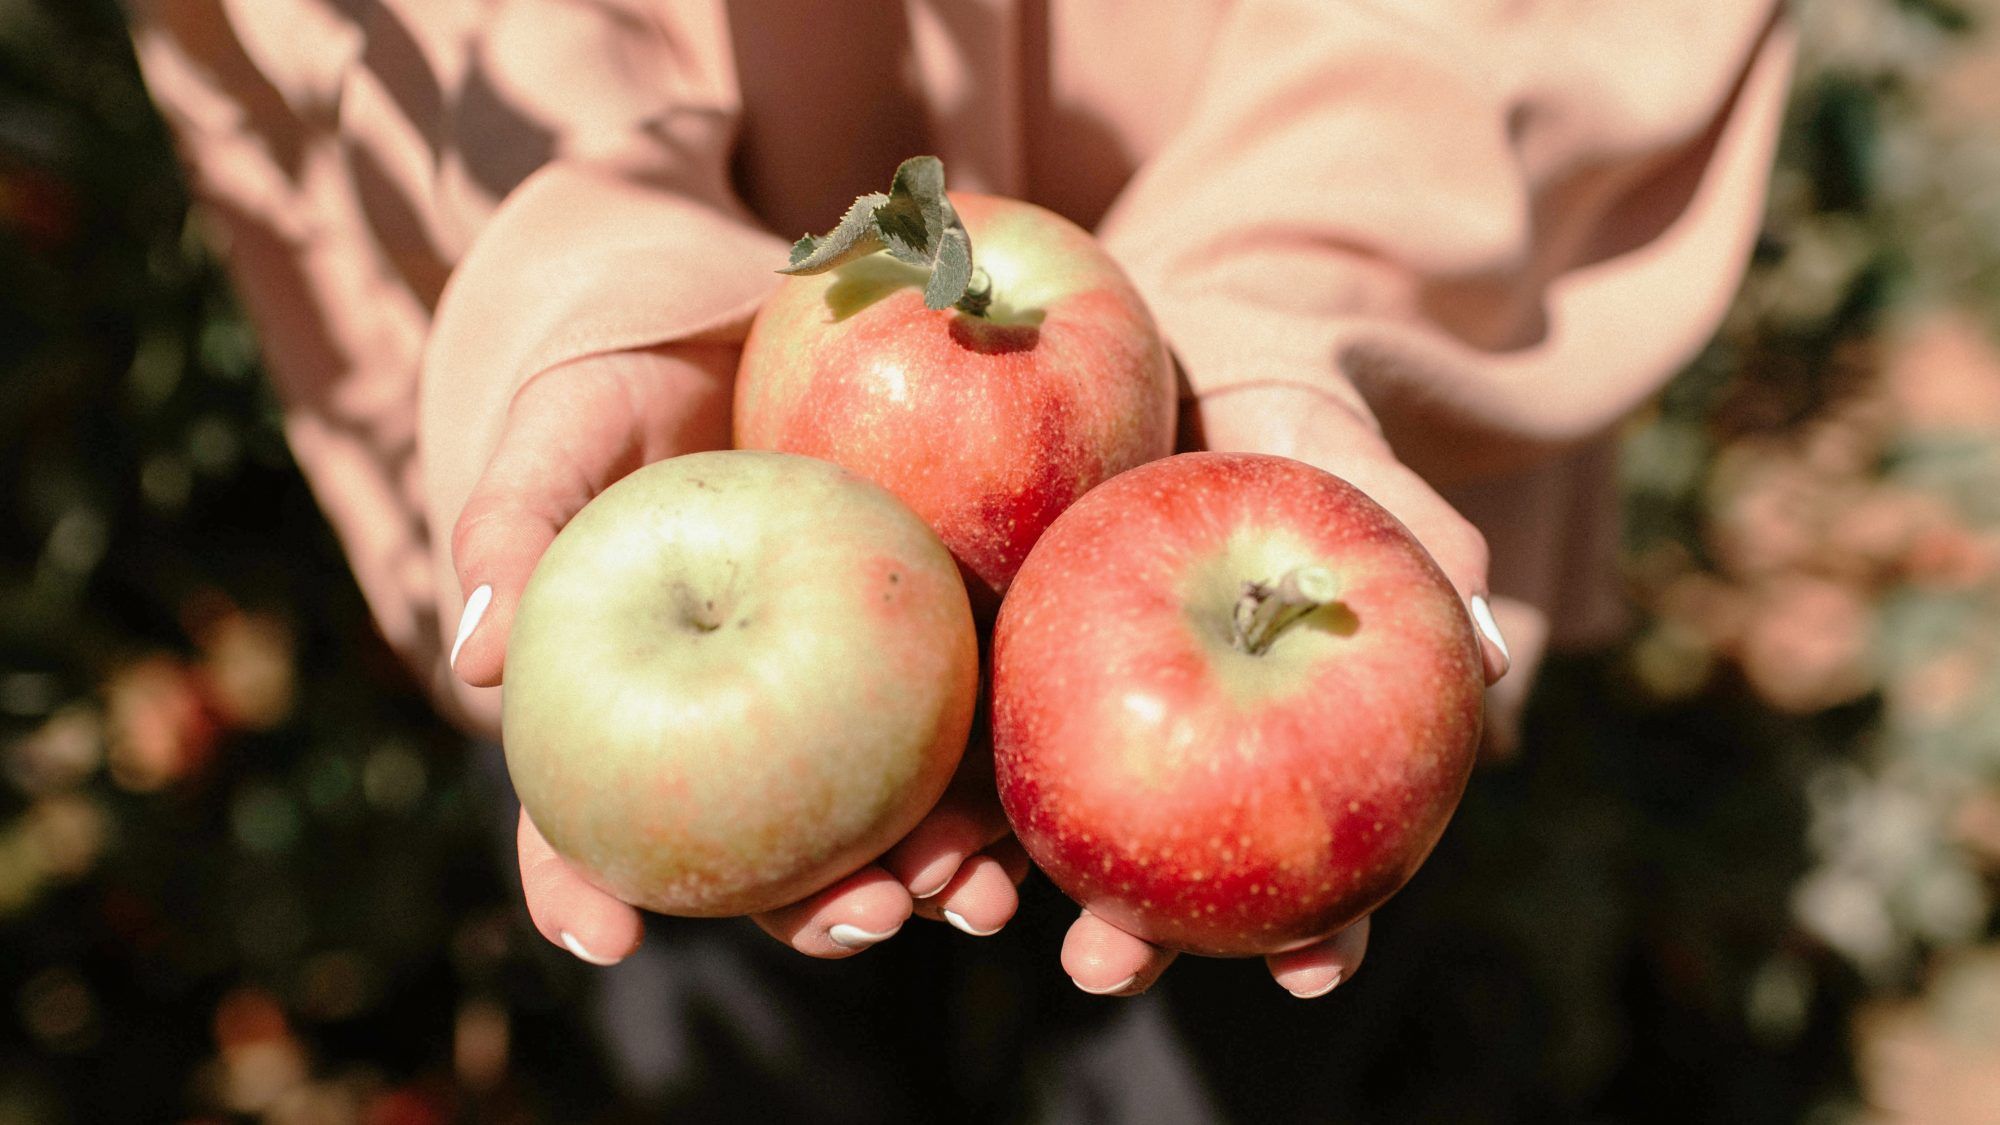 50 melhores lugares para visitar a Apple escolhendo no Yelp: mulher segurando maçãs no outono